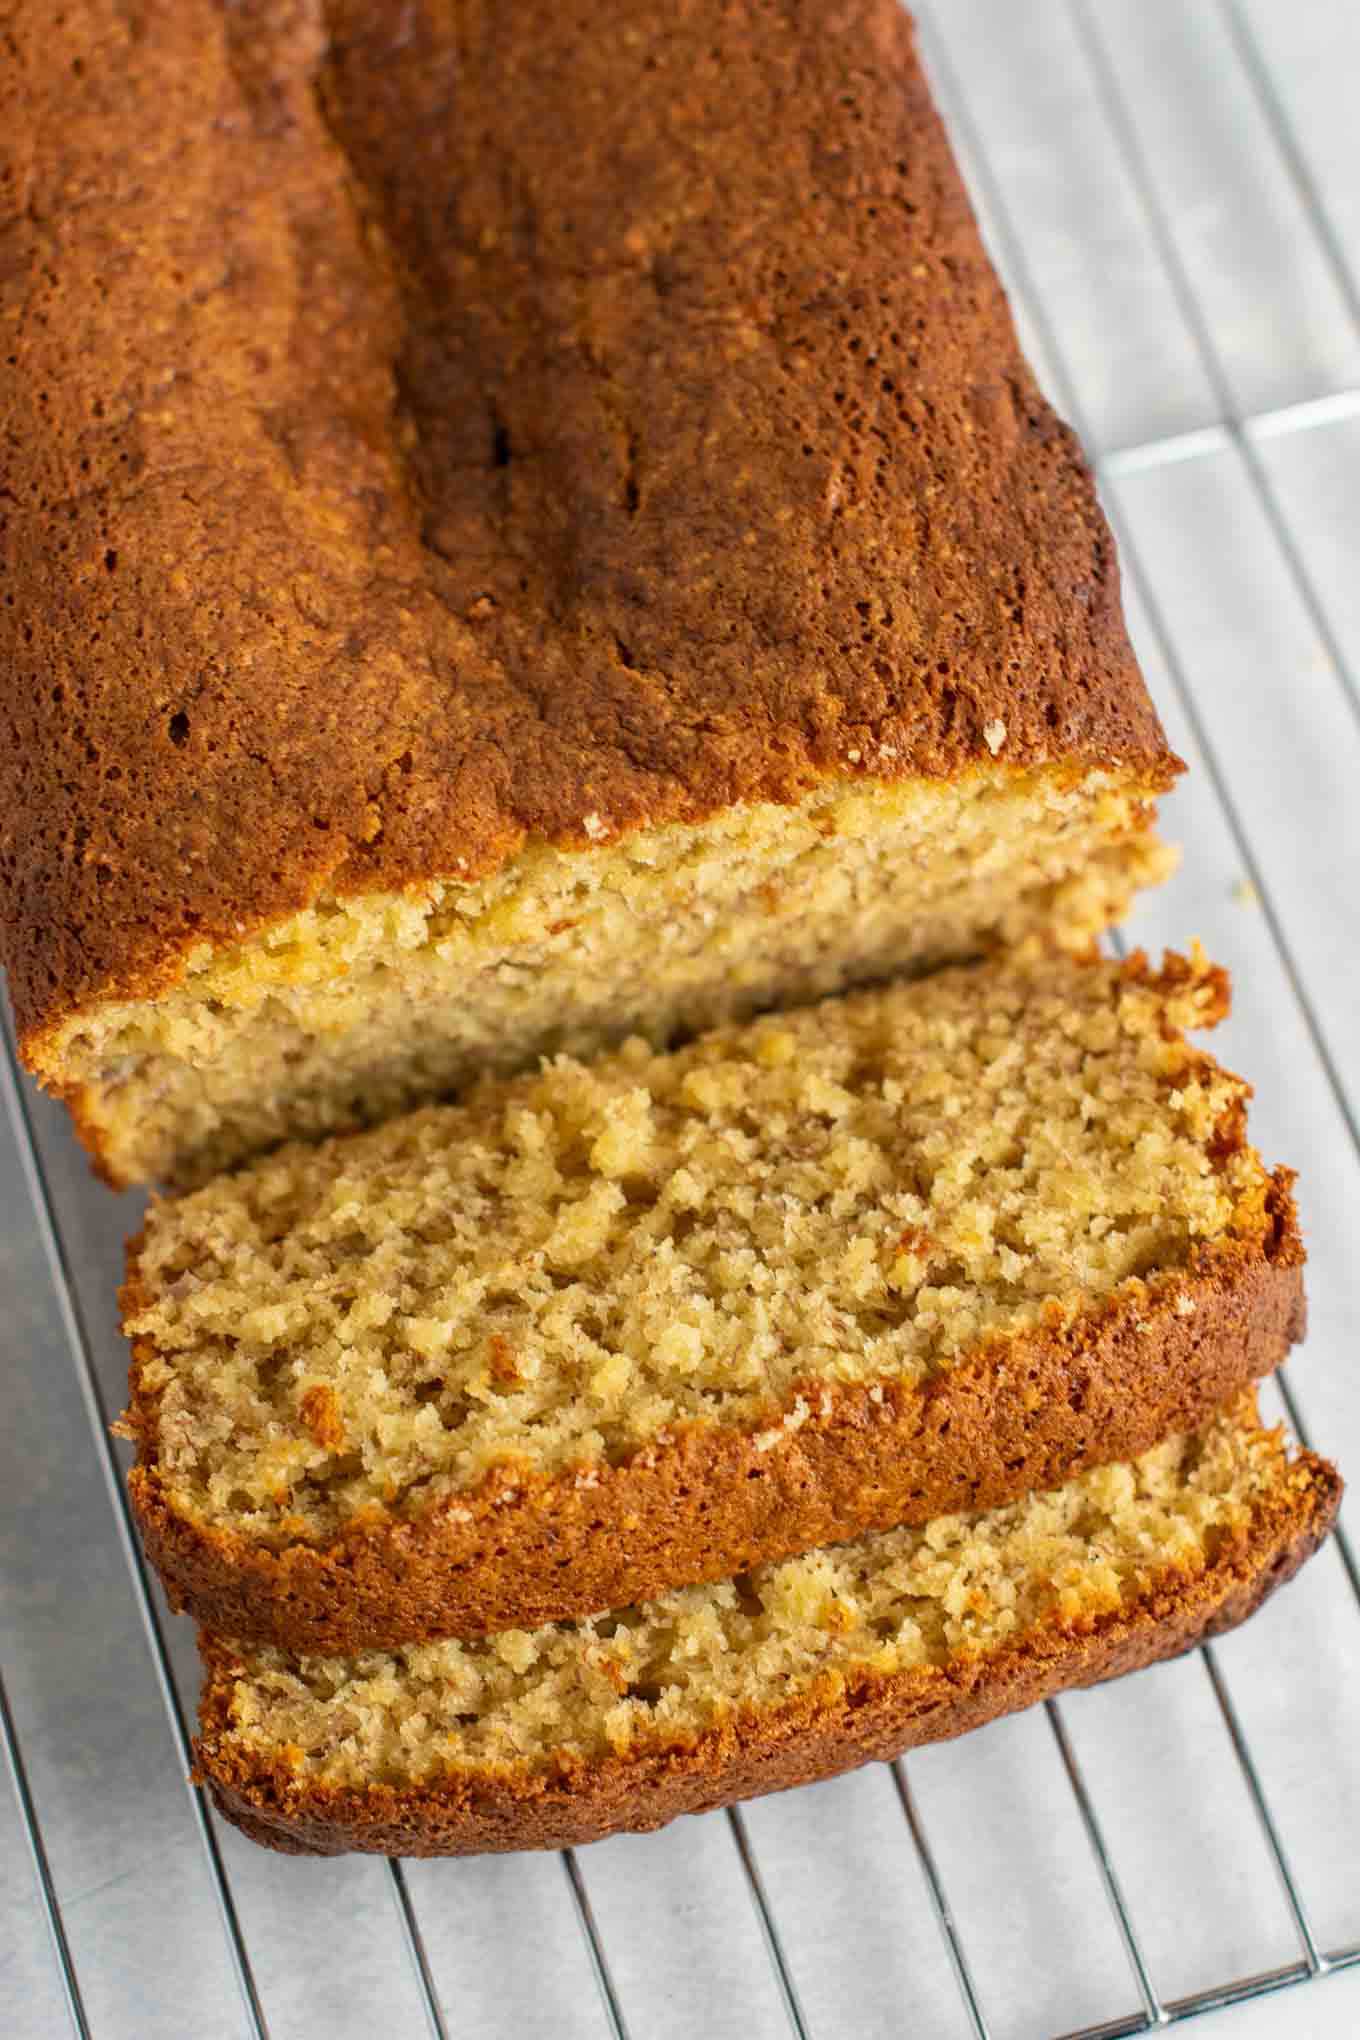 Cake mix banana bread recipe – so easy and so good! #cakemix #bananabread #easyrecipe